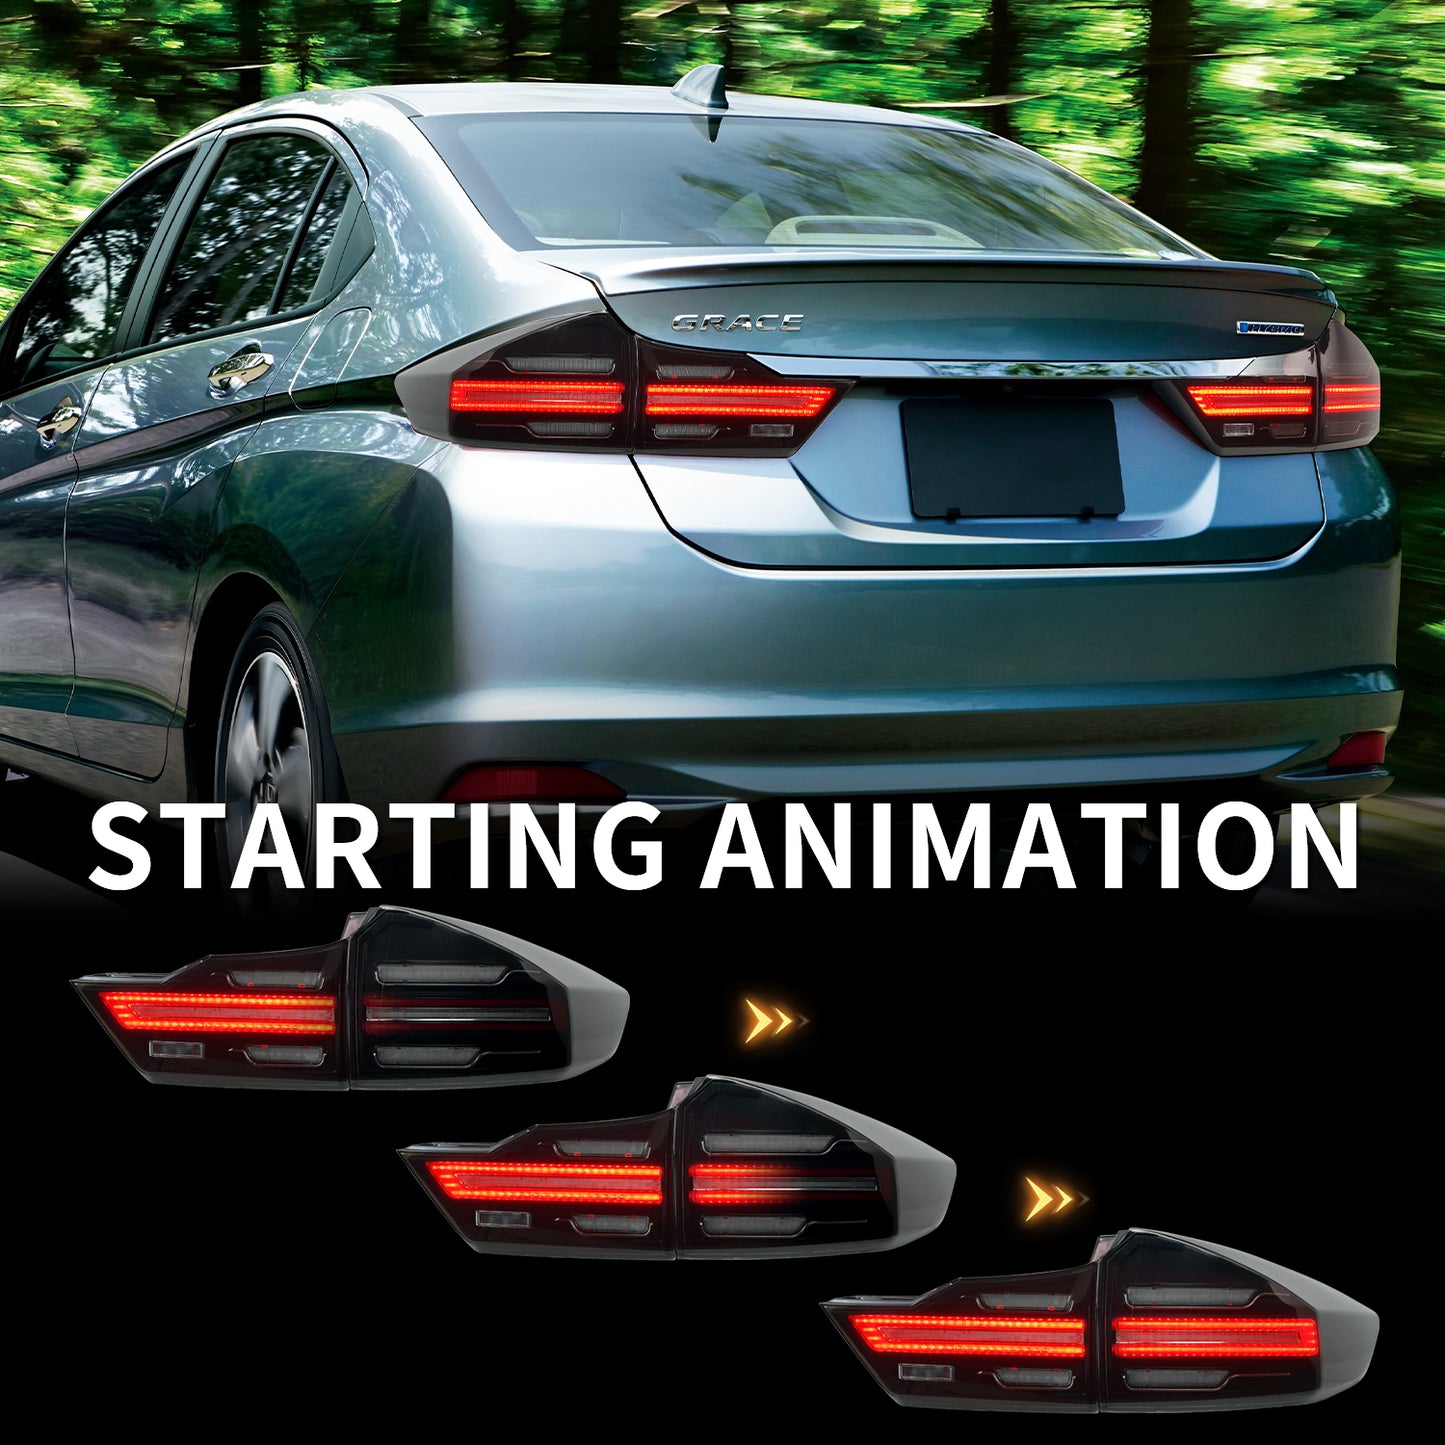 Full LED Tail Lights Assembly For Honda City 2014-2020